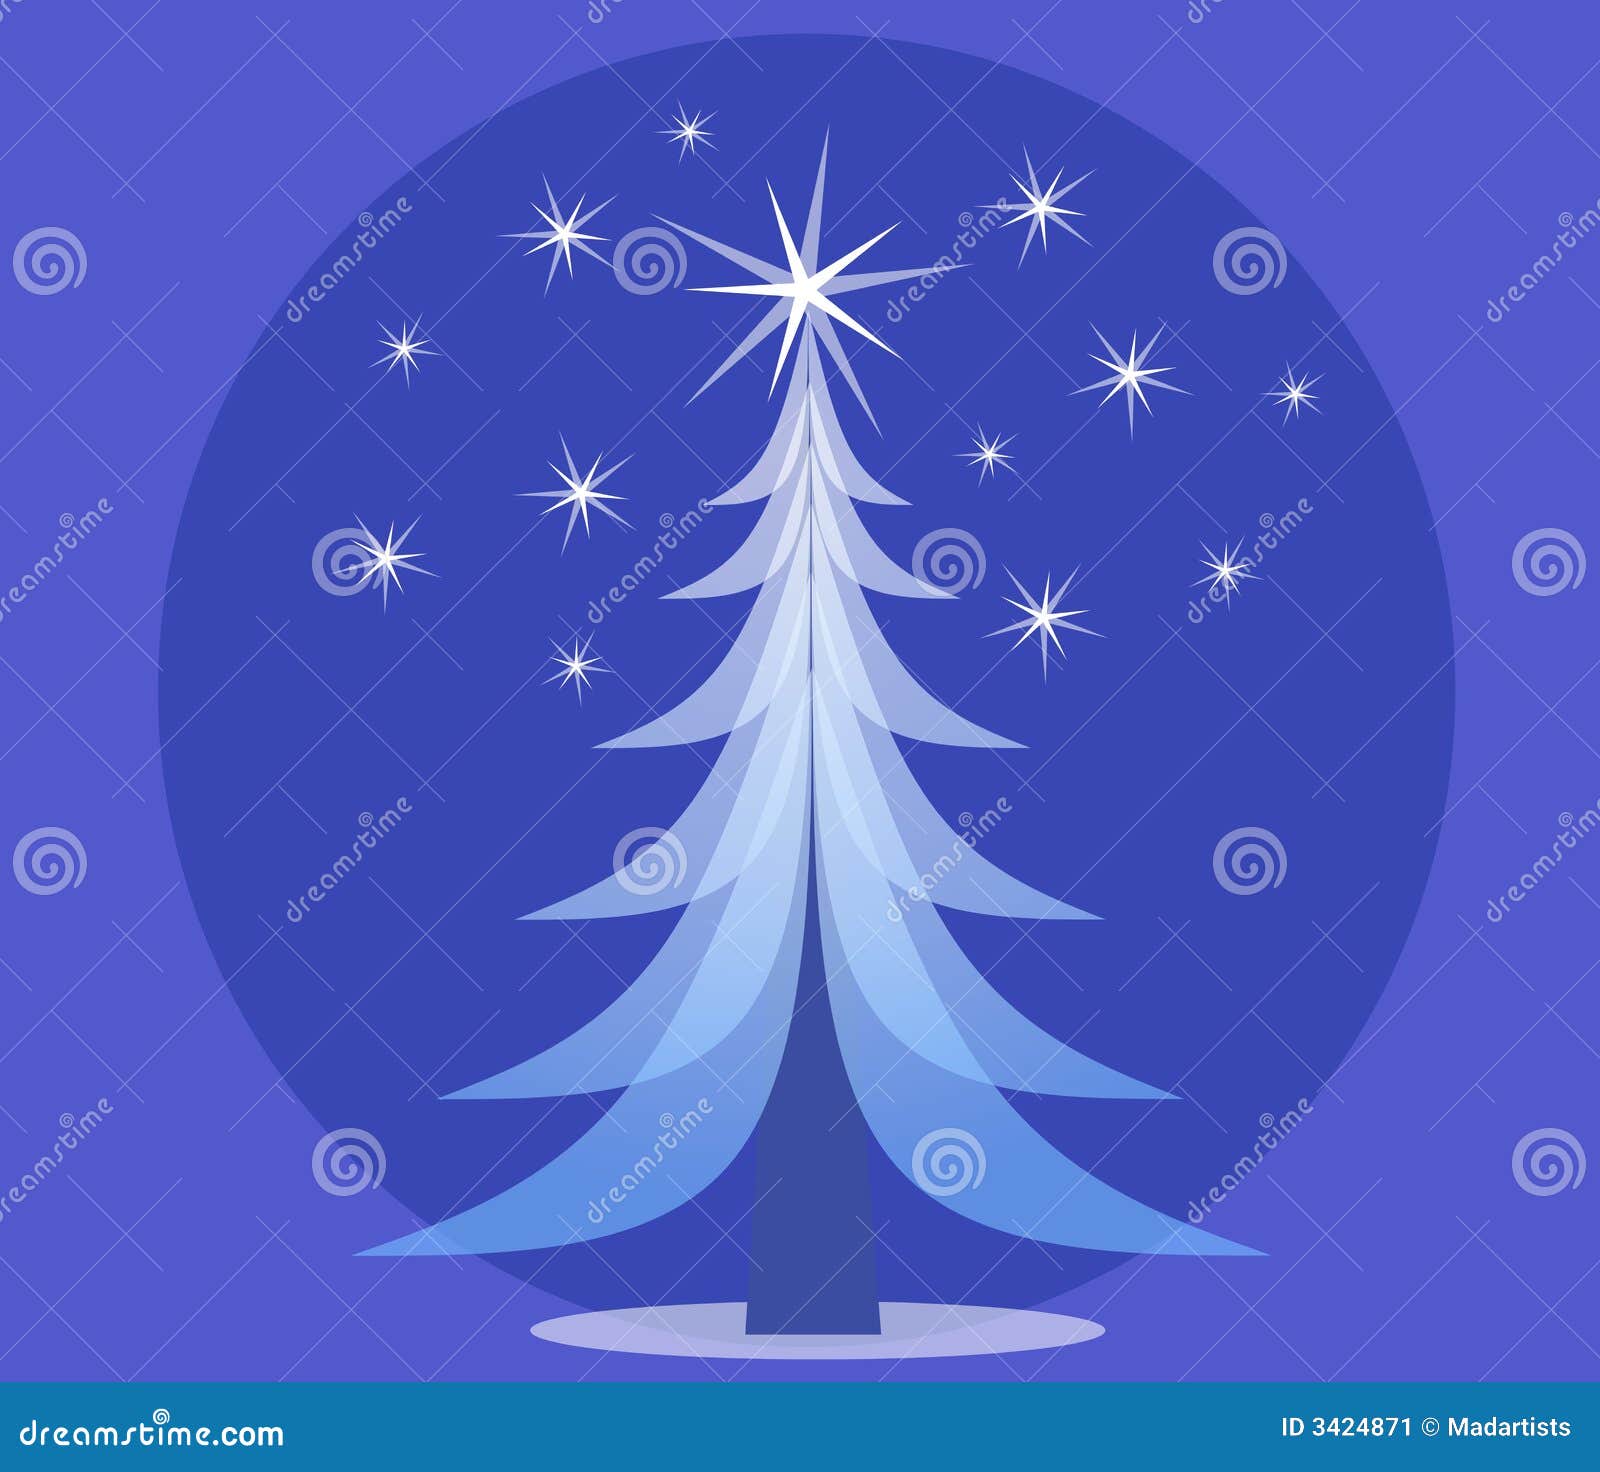 blue opaque christmas tree